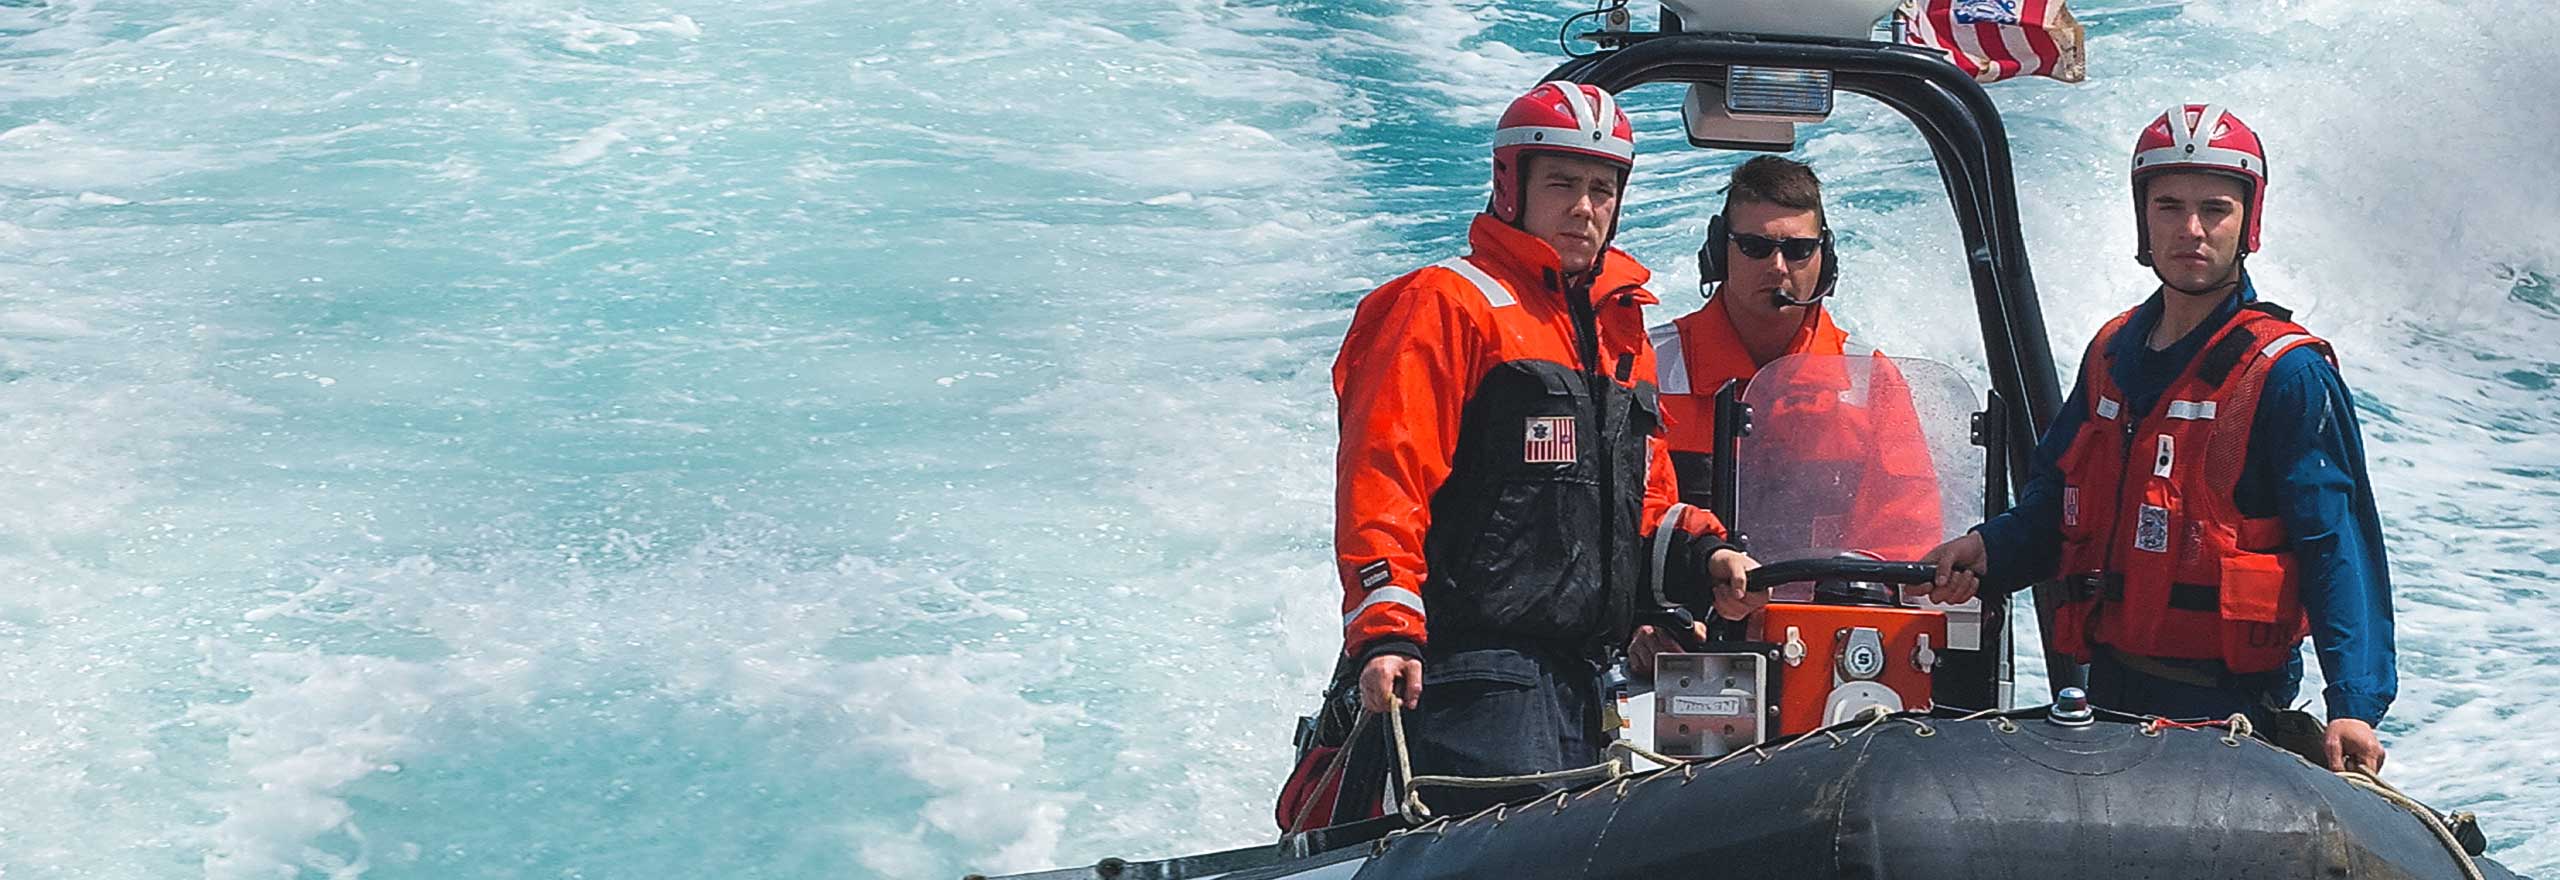 Mitglieder der US-Küstenwache auf einem Schiff, das durch offenes Gewässer fährt